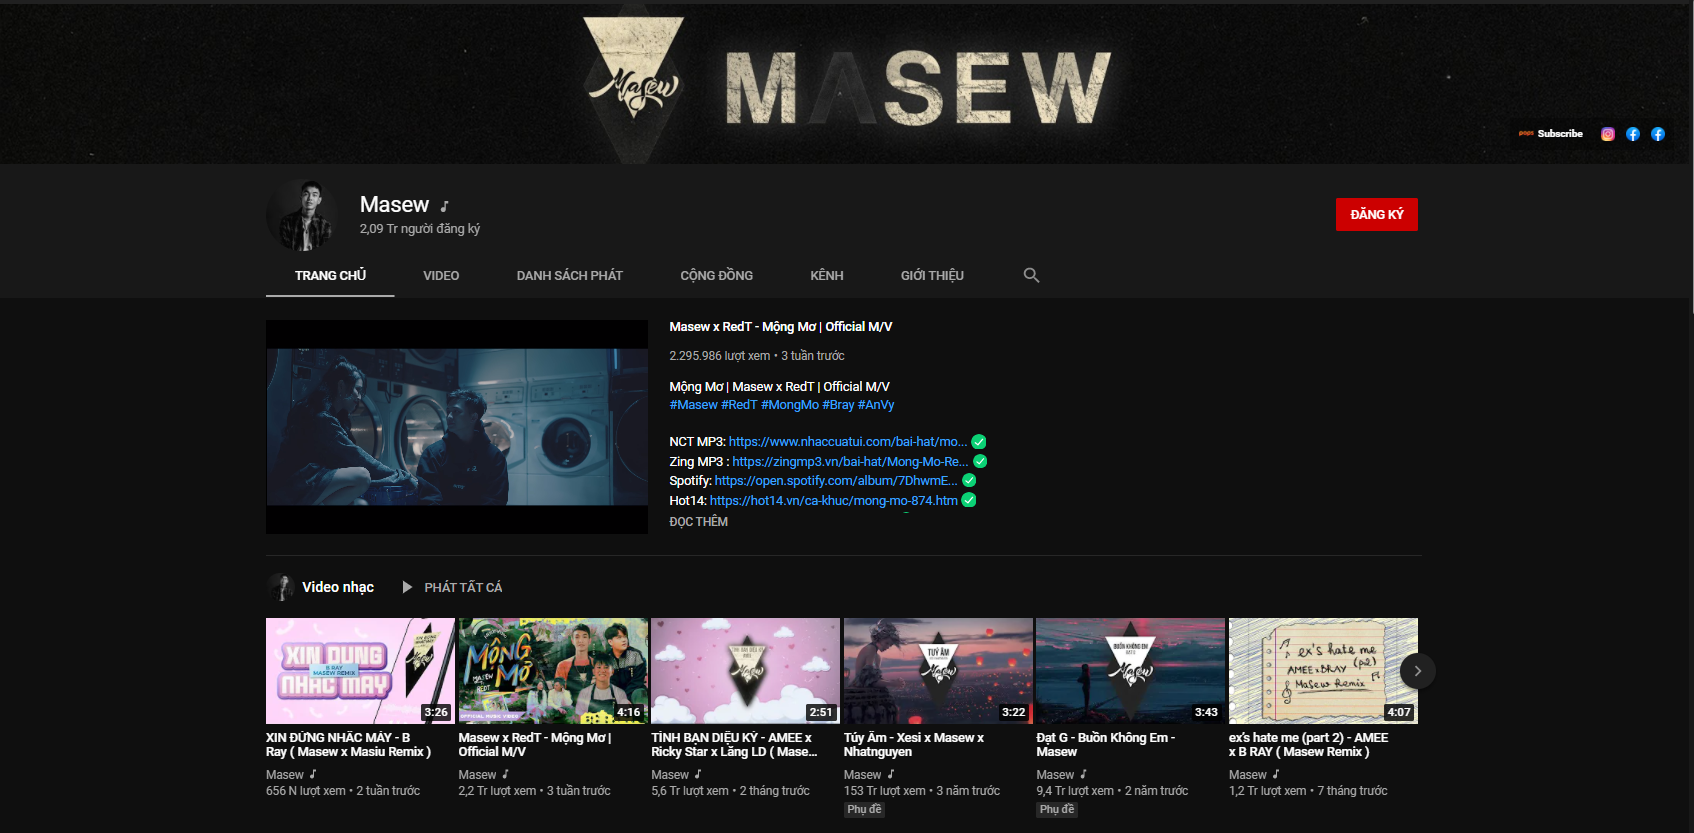 Masew - Producer hàng loạt ca khúc làm mưa làm gió trên youtube